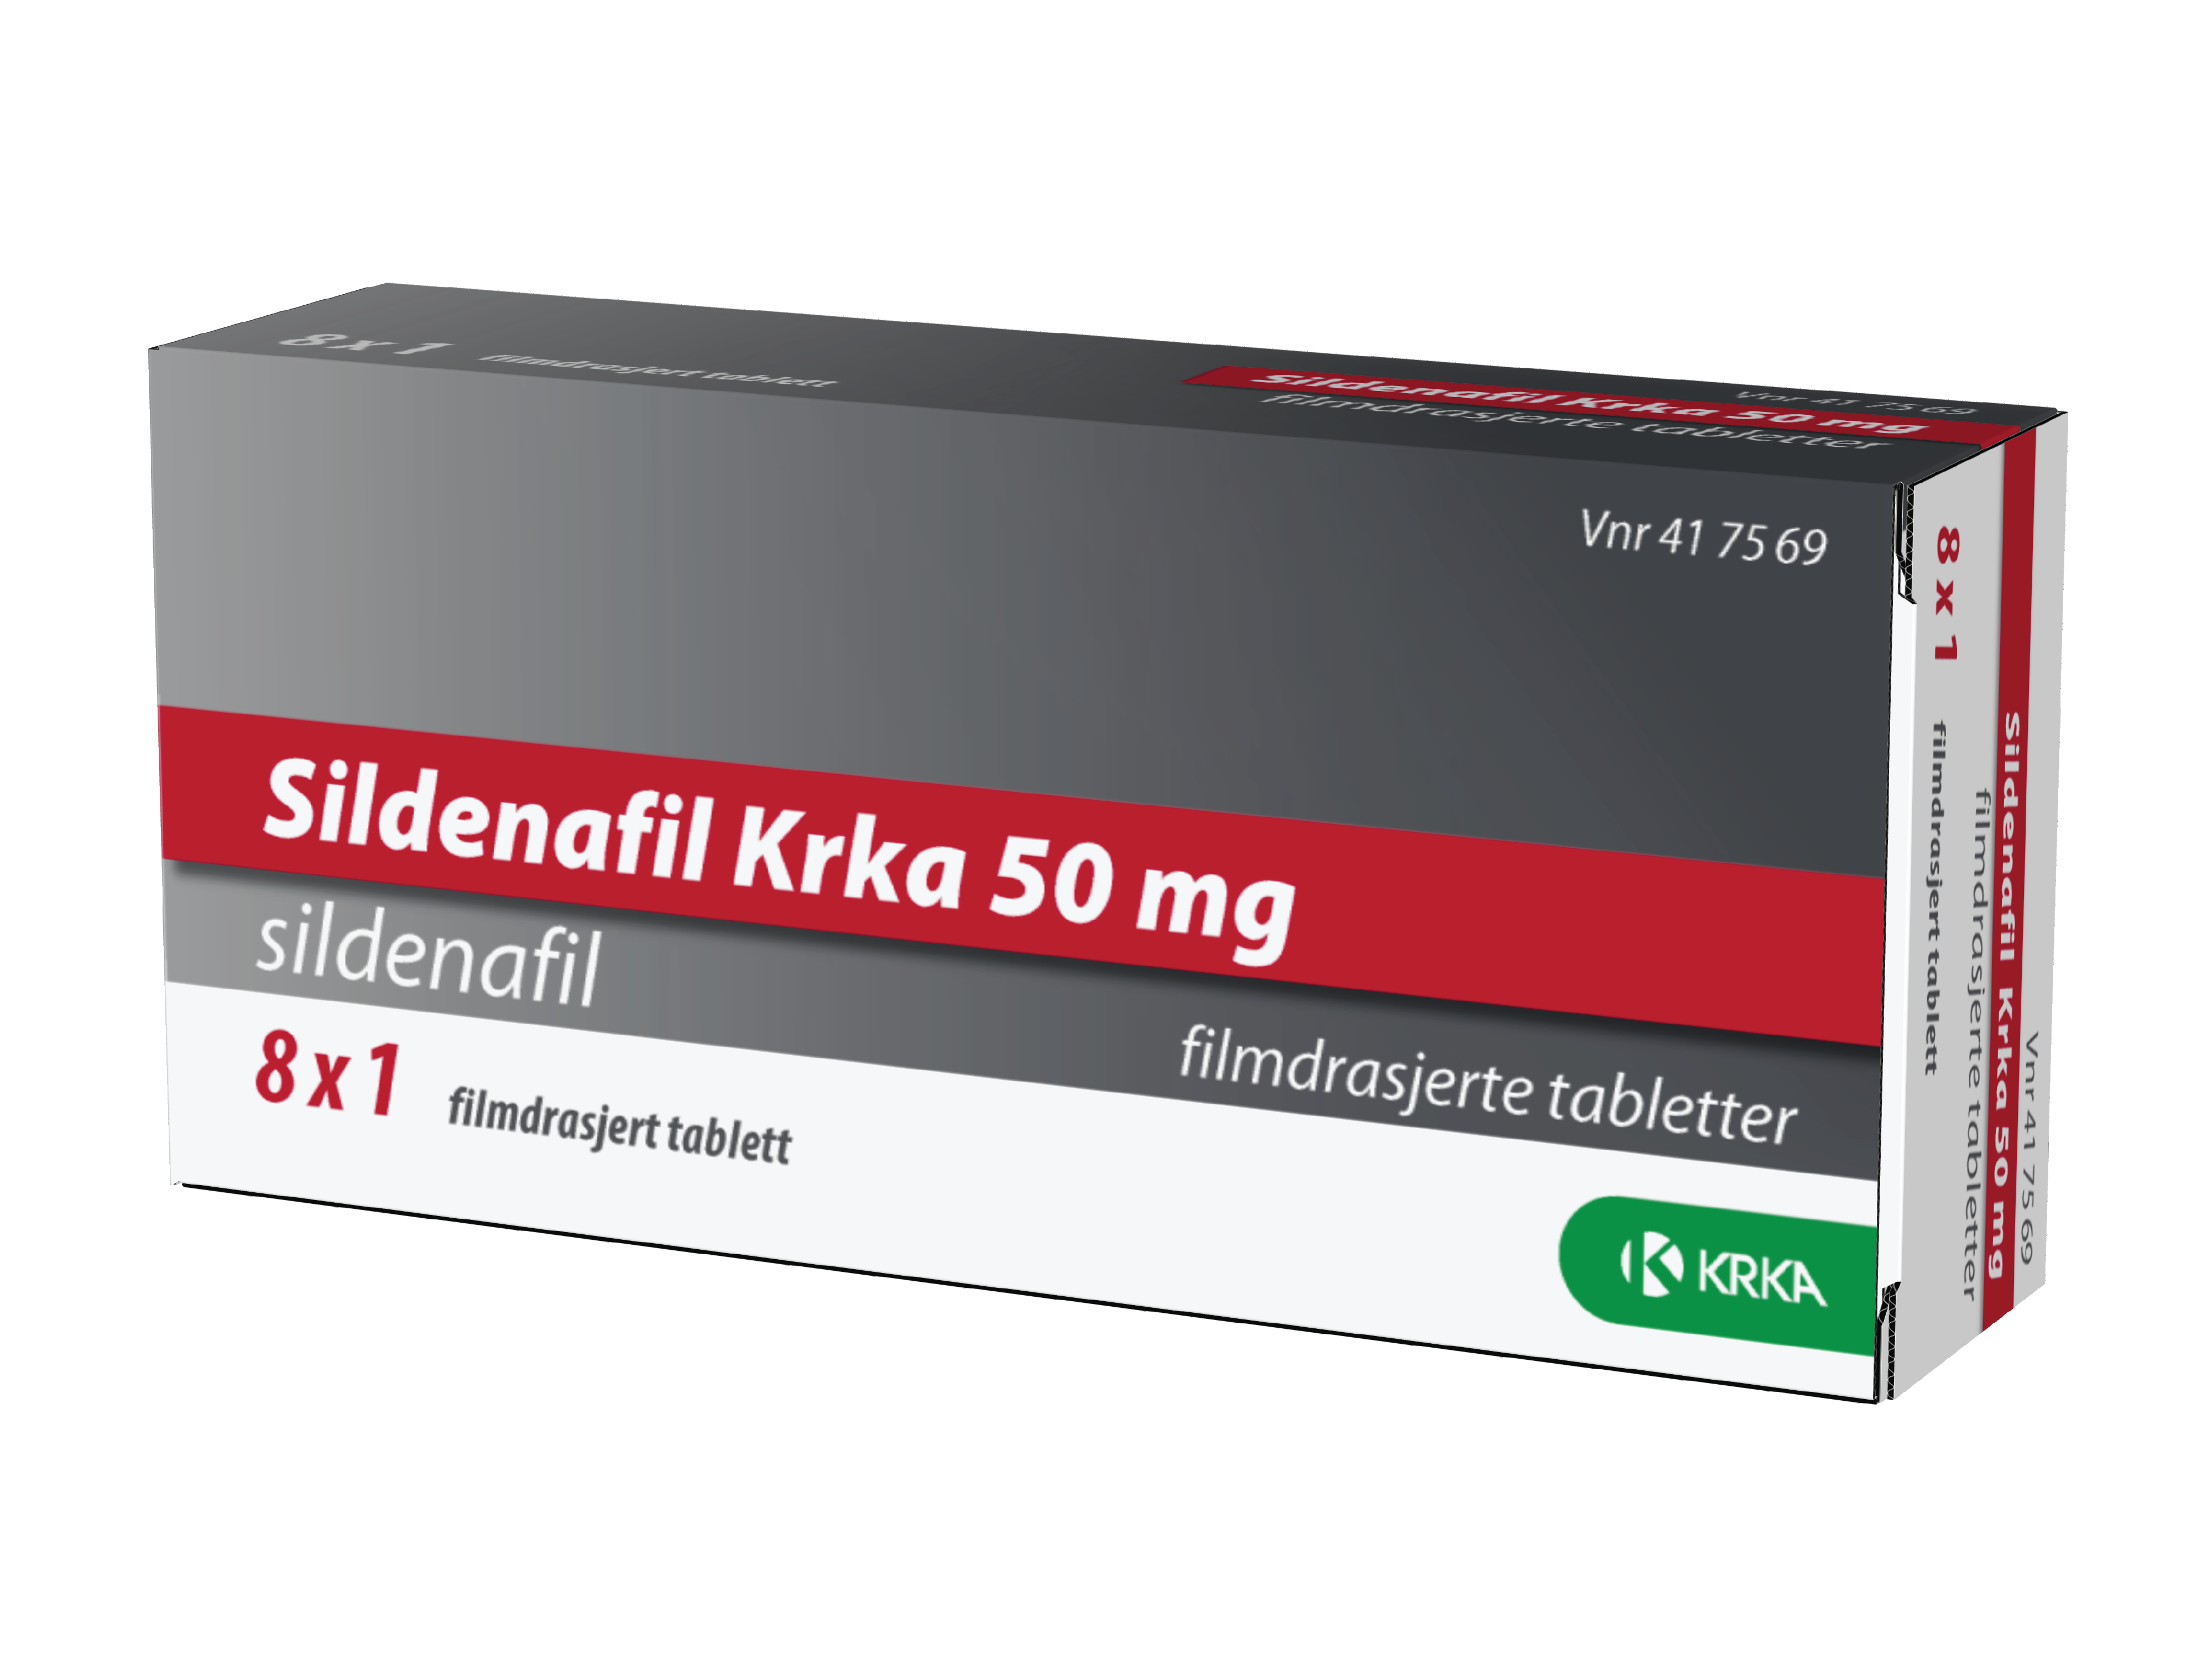 Sildenafil Krka 50 mg tabletter, 8 stk.